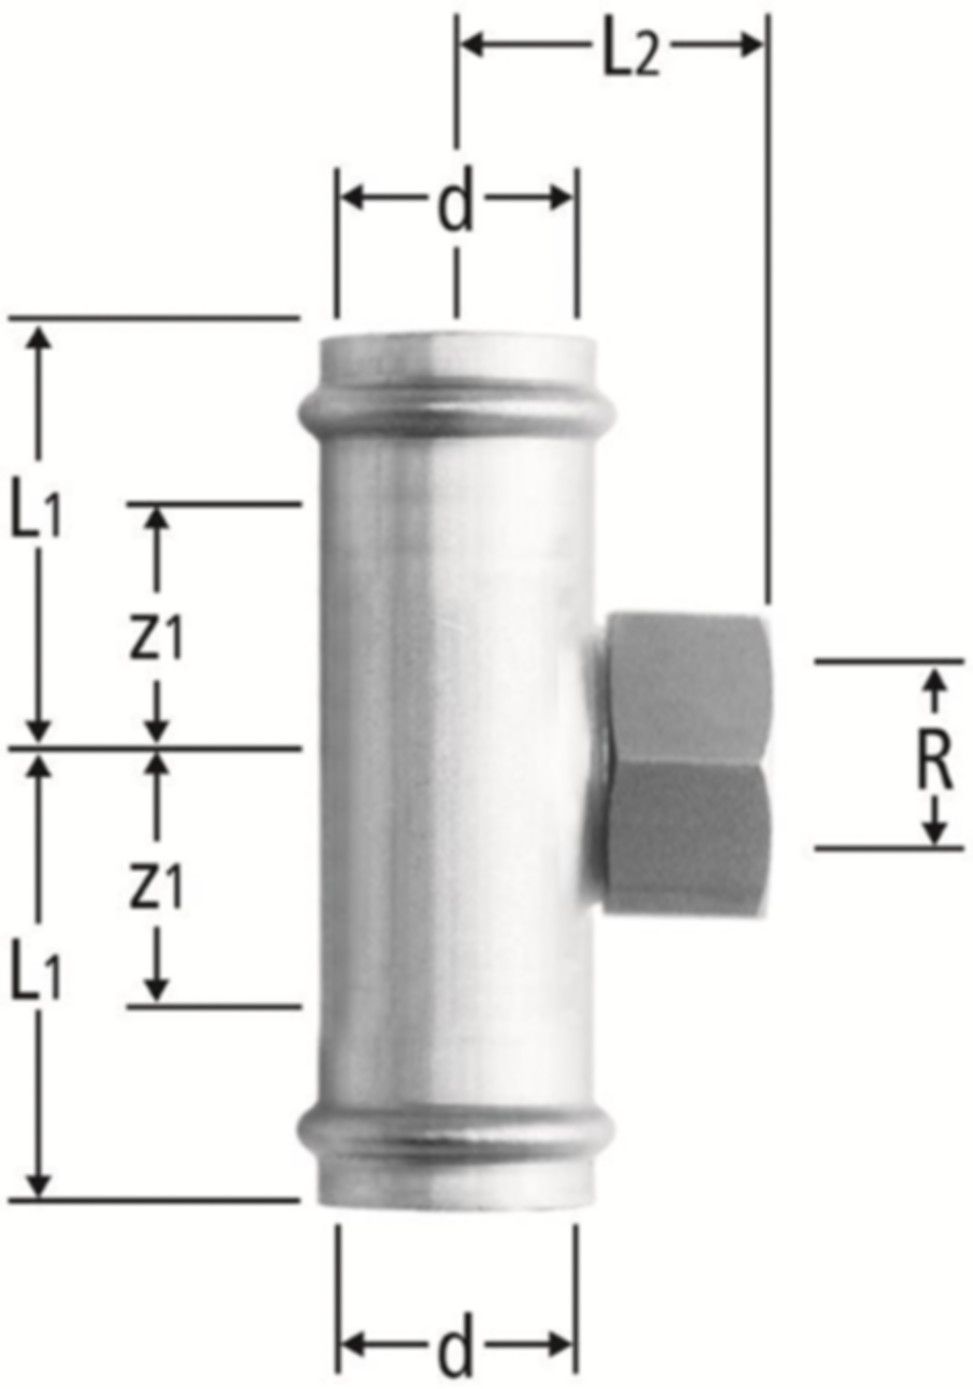 T-Stück m/IG 15 x 1/2" x 15 mm 80019.22 mit Schiebemuffe - Nussbaum-Optipress-Inox-Fittings